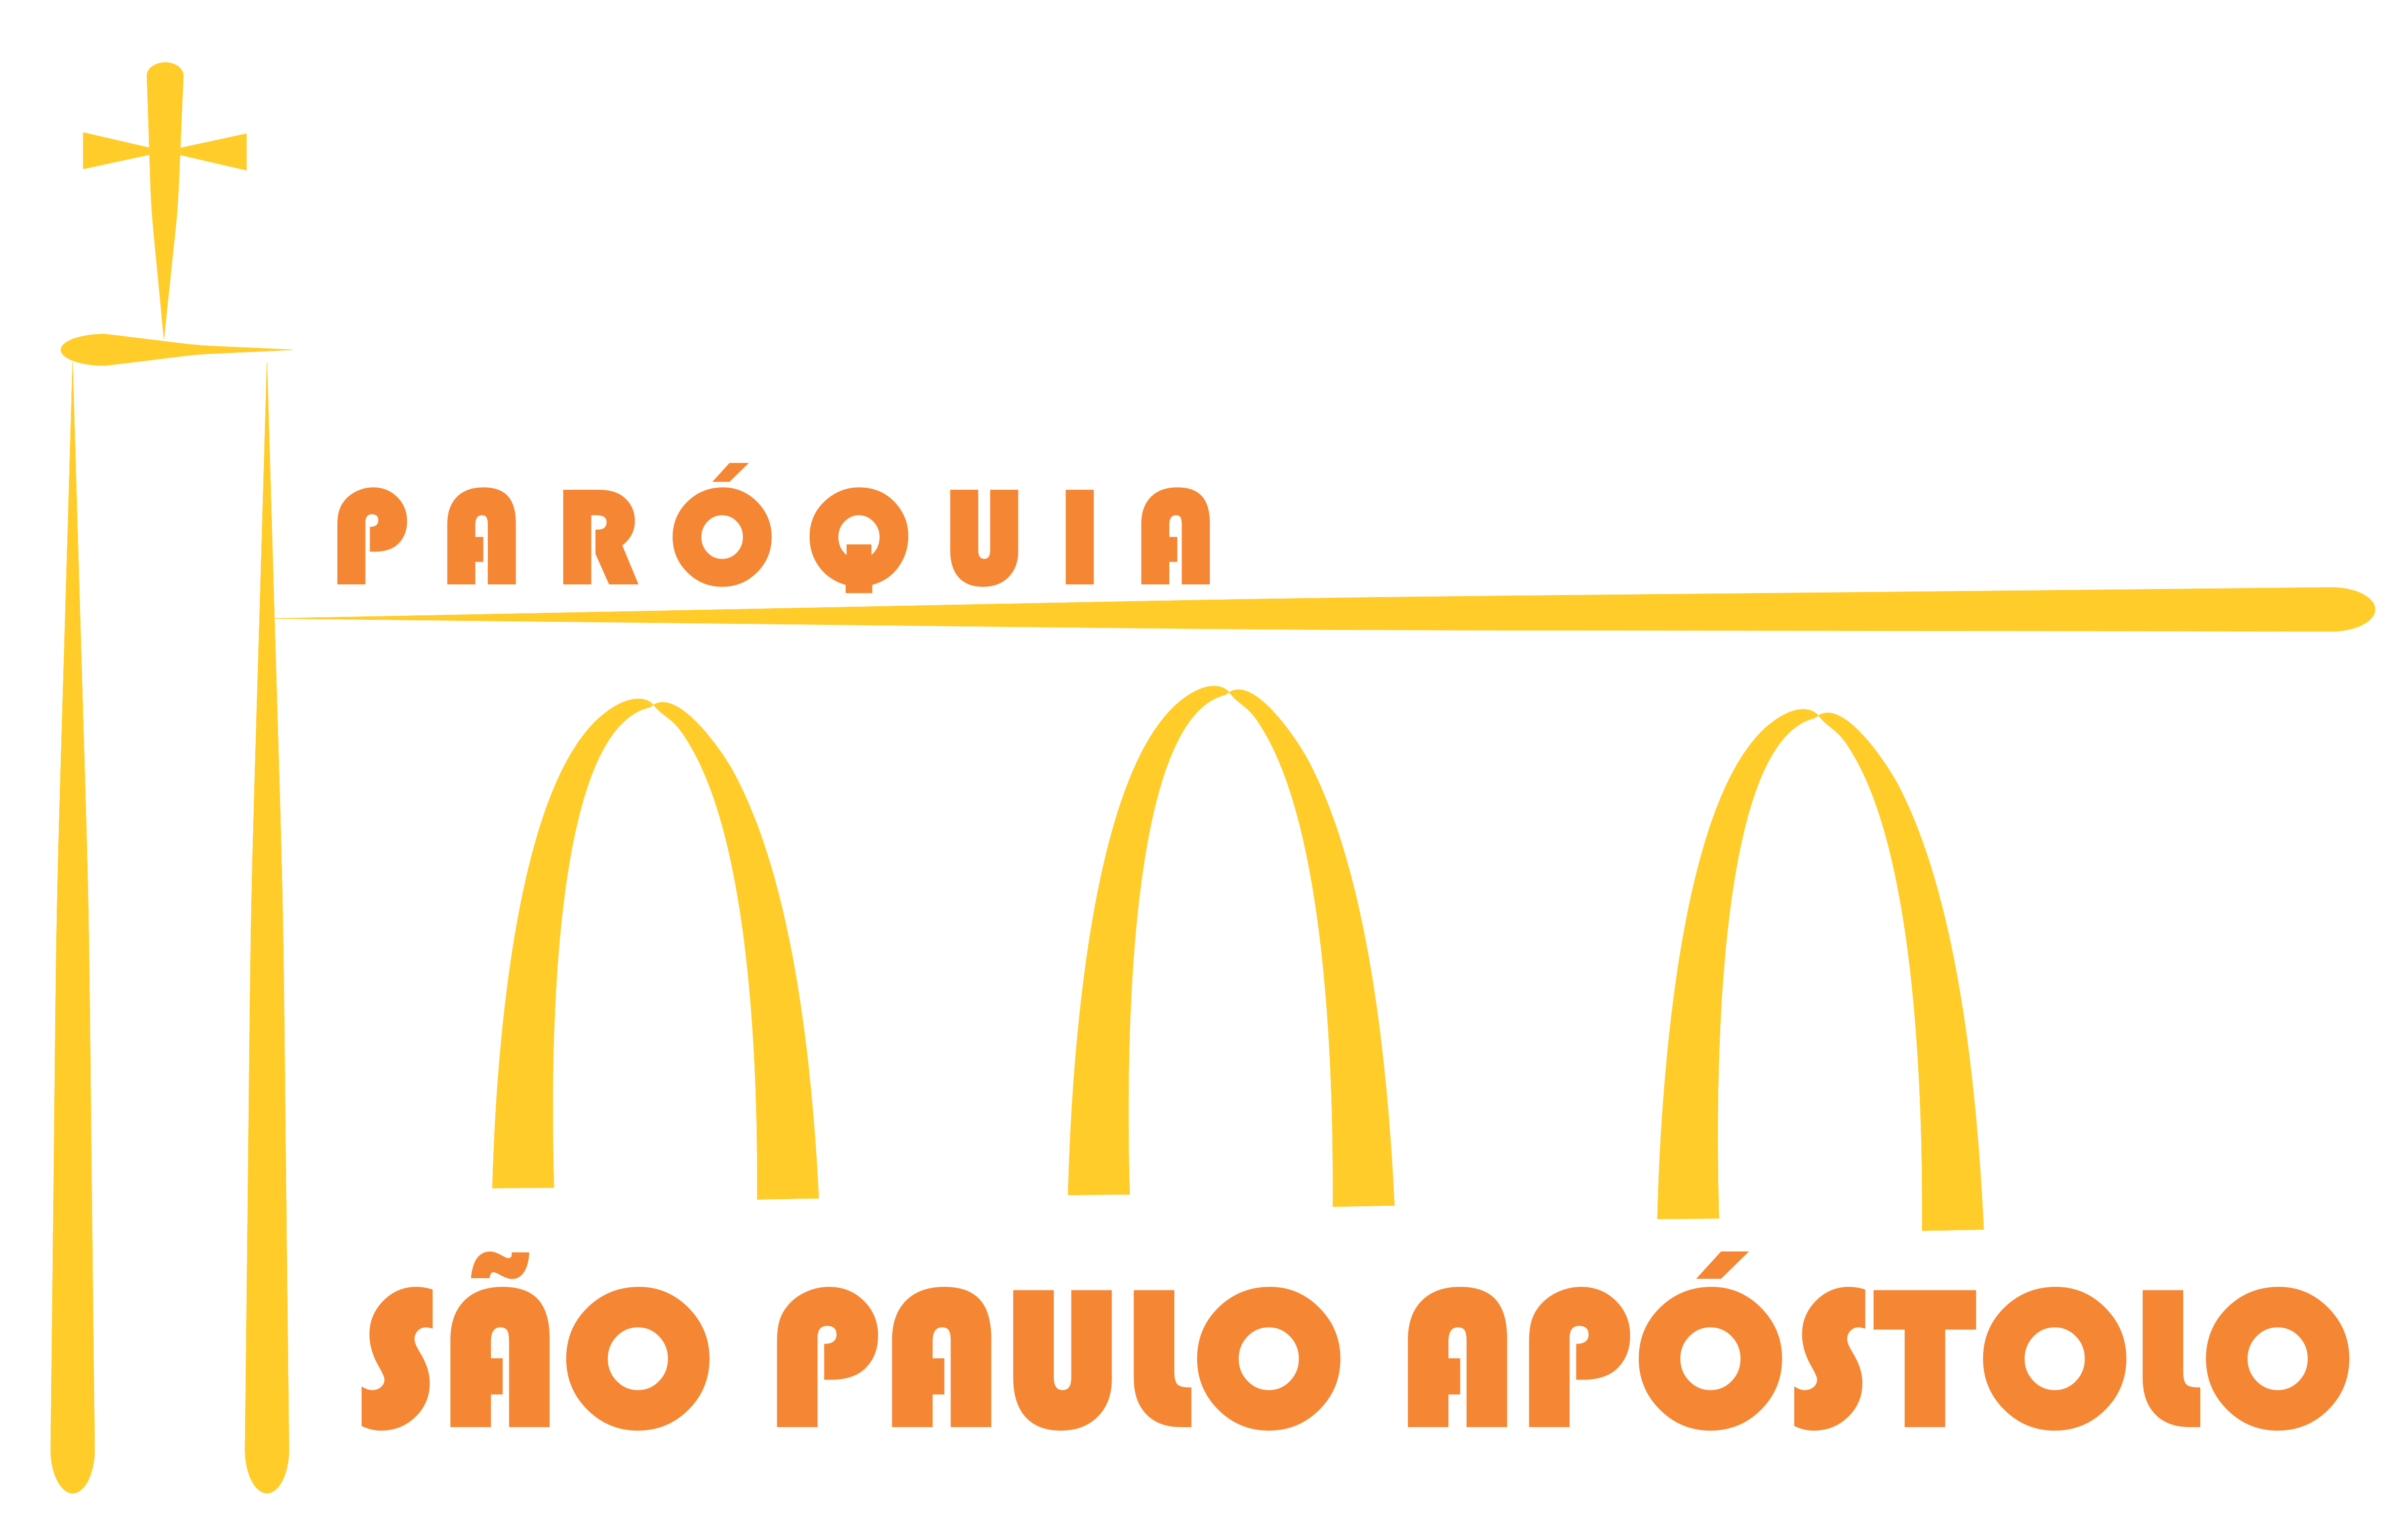 São Paulo Apostulo